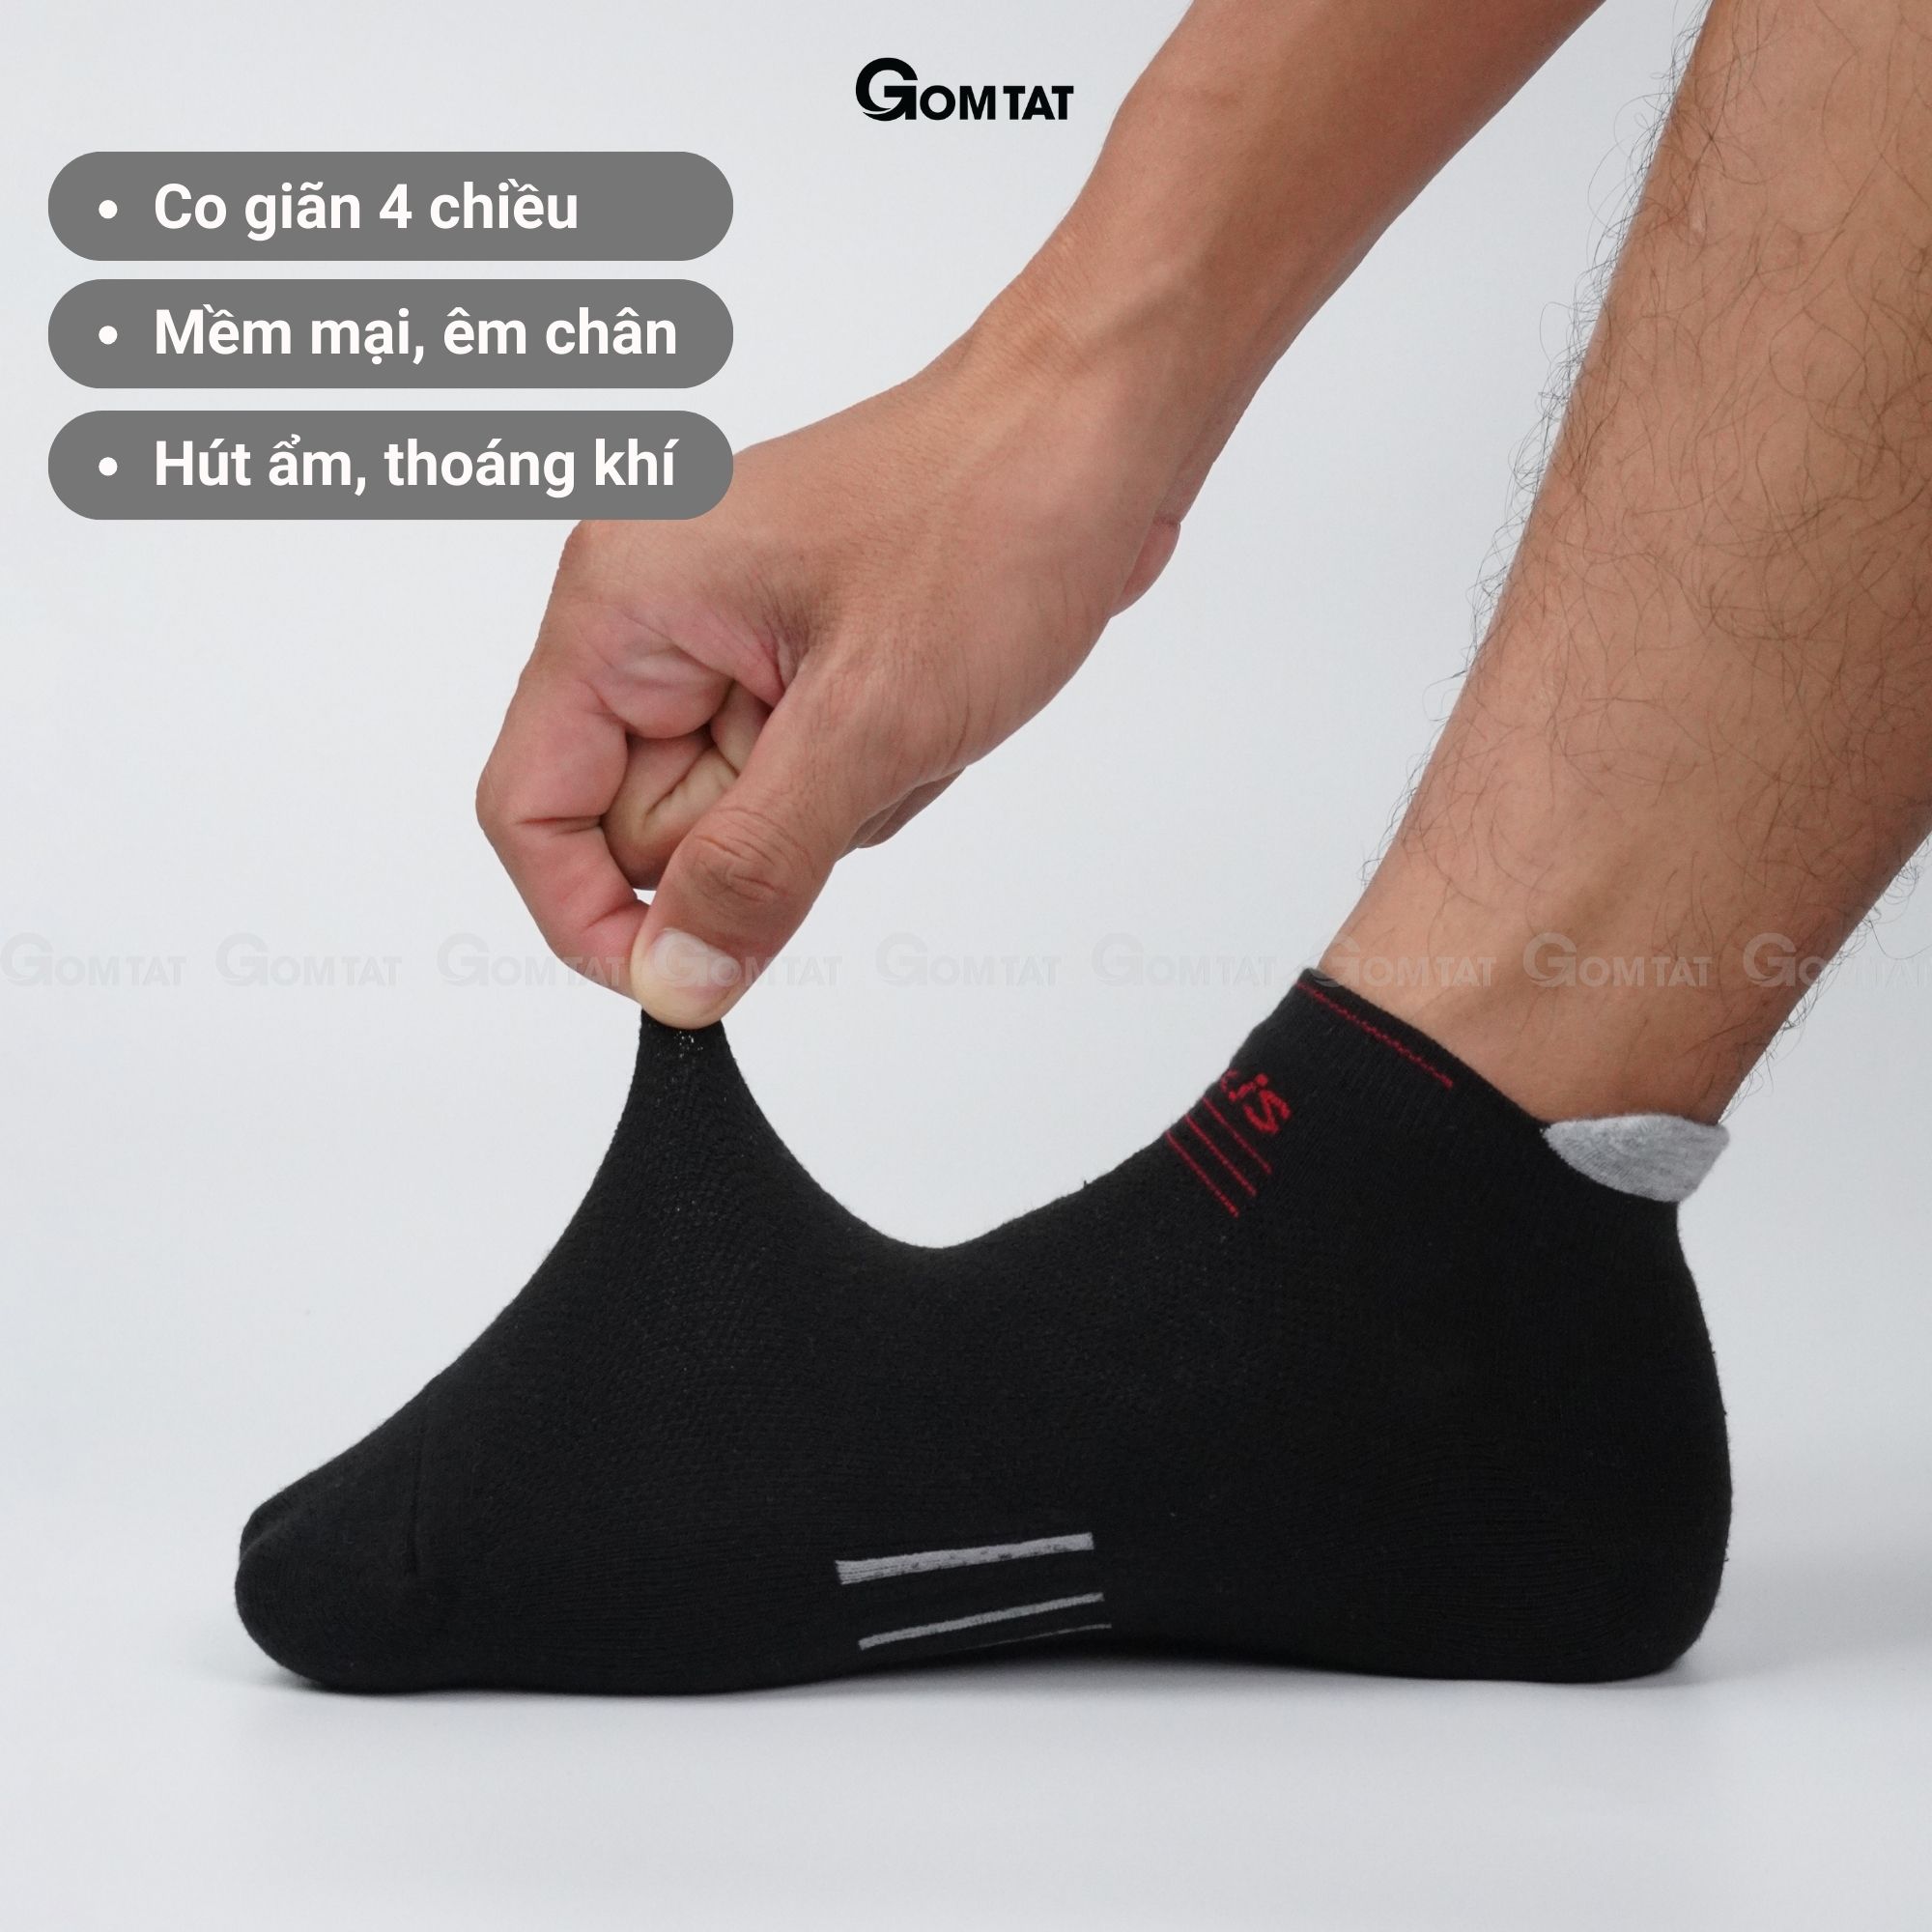 Tất nam cổ ngắn GOMTAT chuyên dùng cho thể thao, chất liệu cotton cao cấp, có đệm bảo vệ gót chân - LUXIS-S16-1DOI